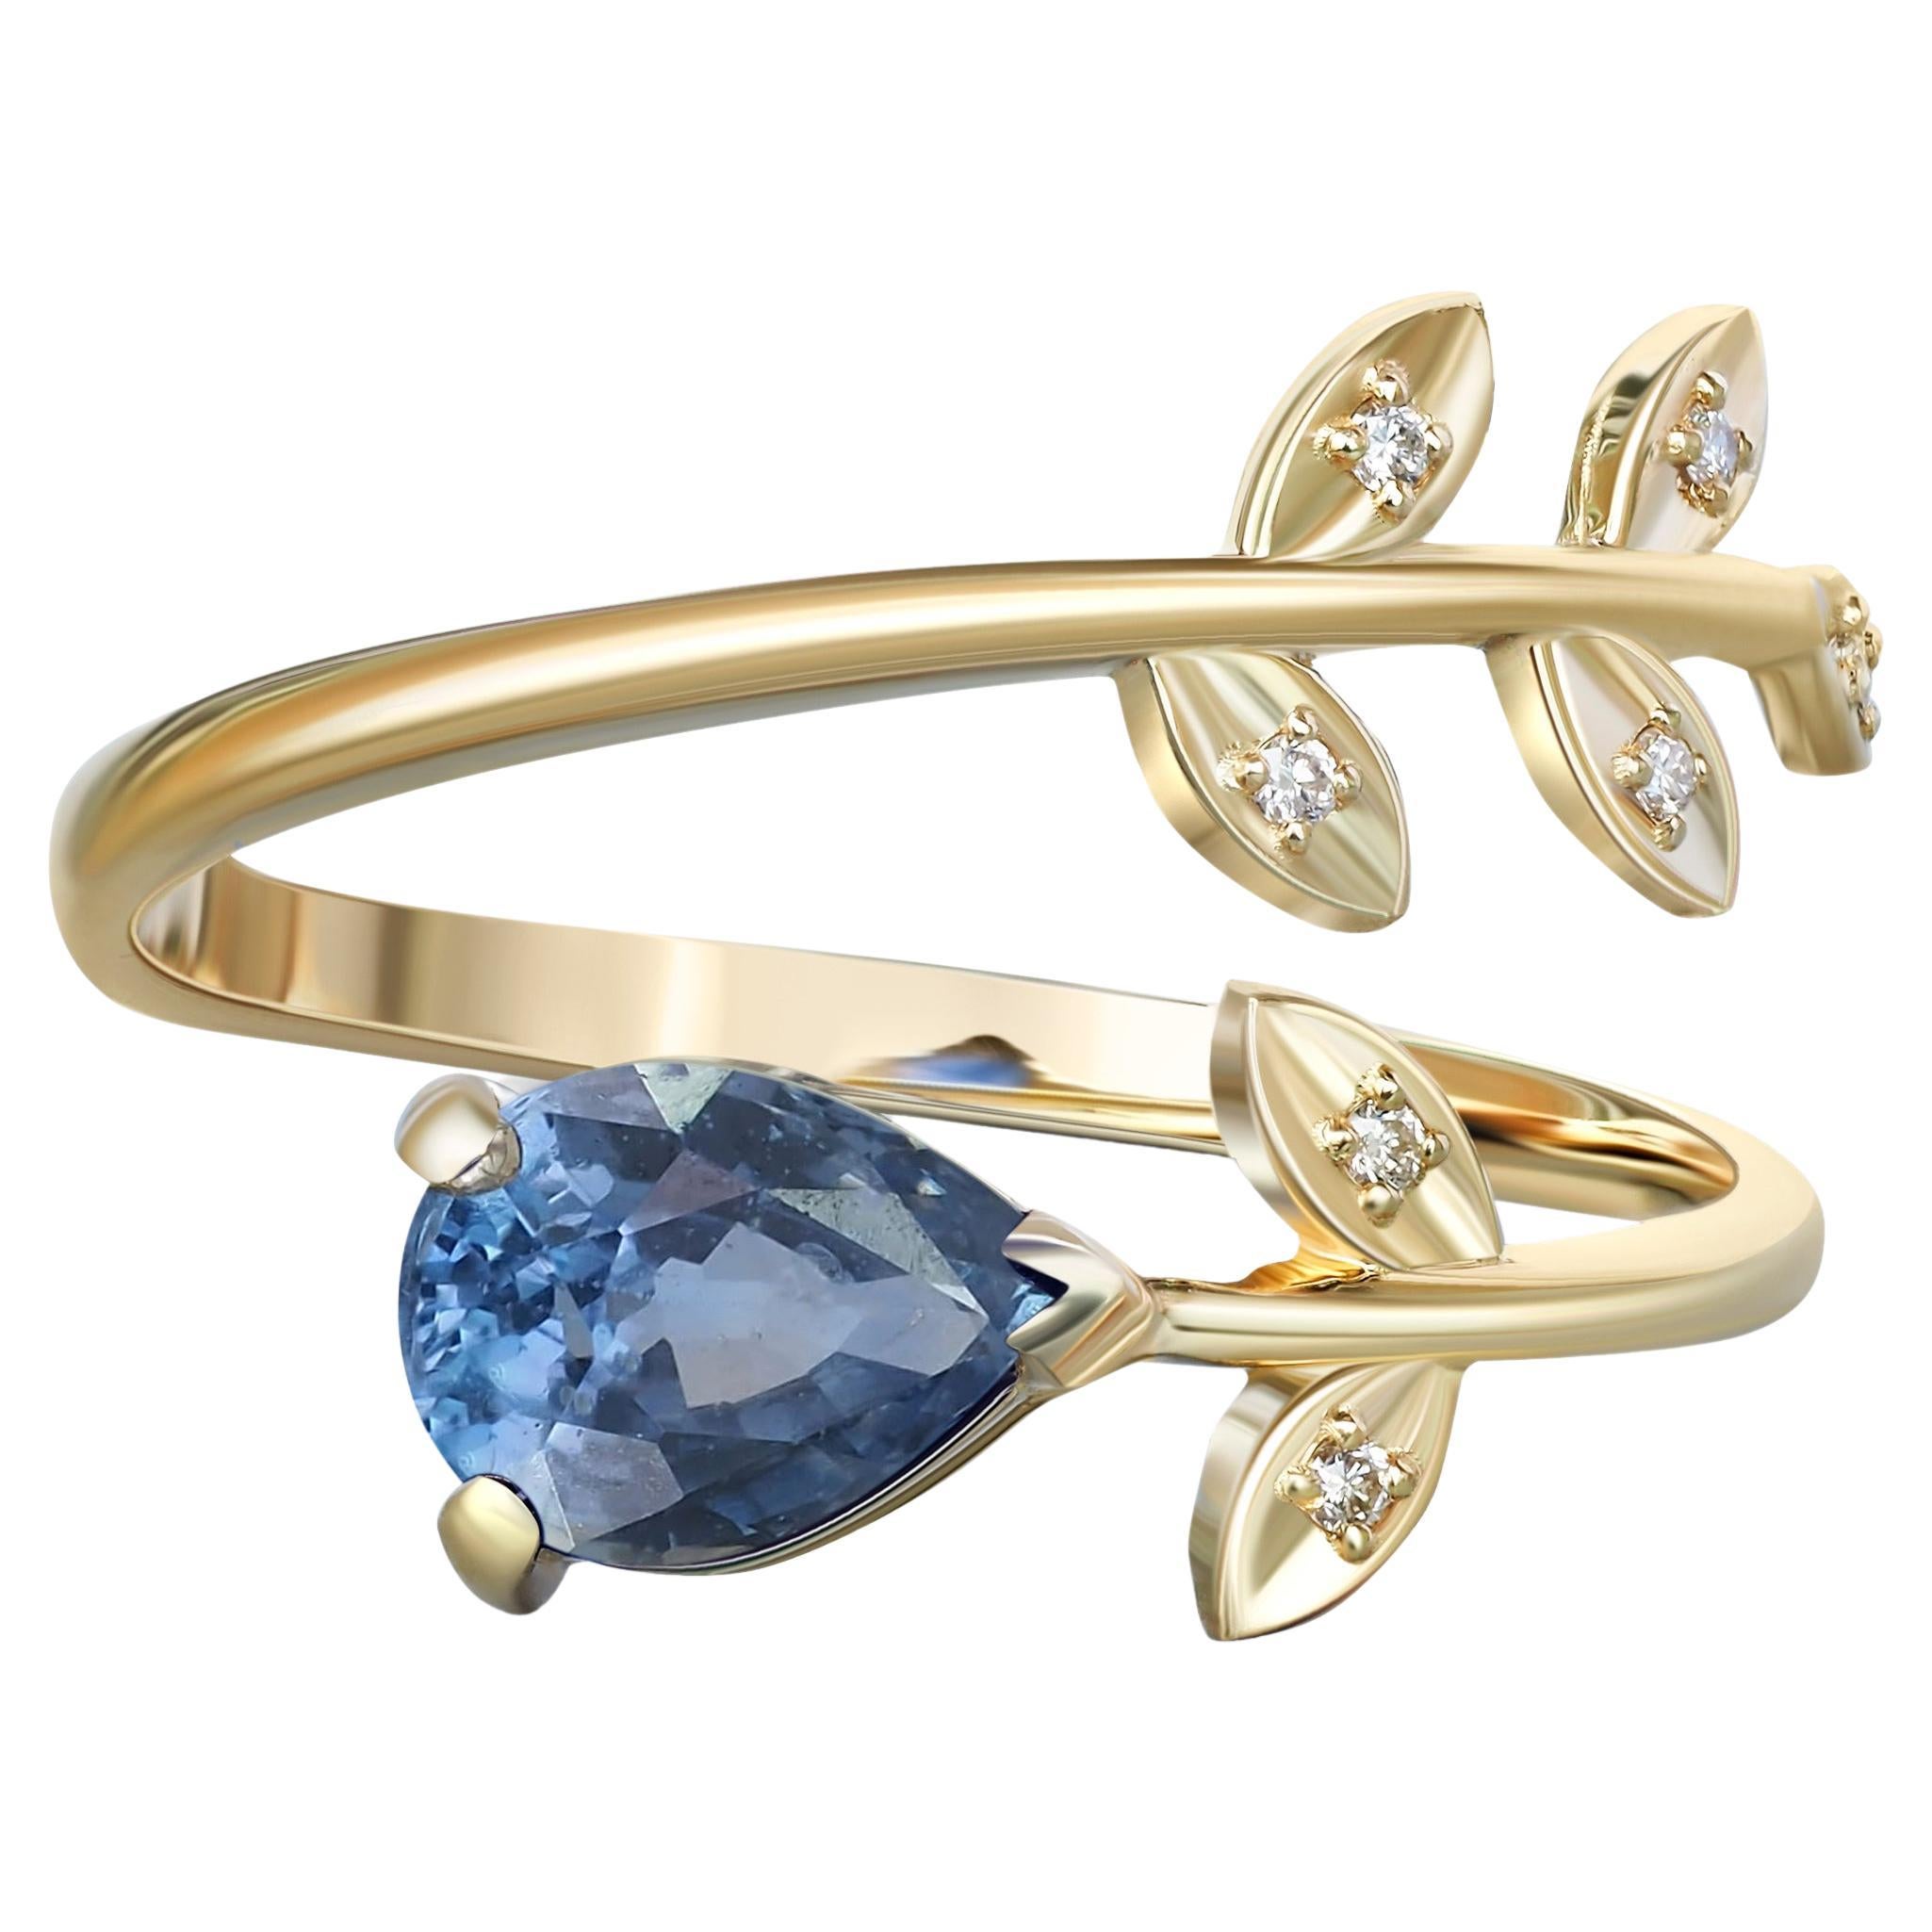 Ring aus 14-karätigem Gold mit Birnensaphir. Goldring mit blauem Saphir.